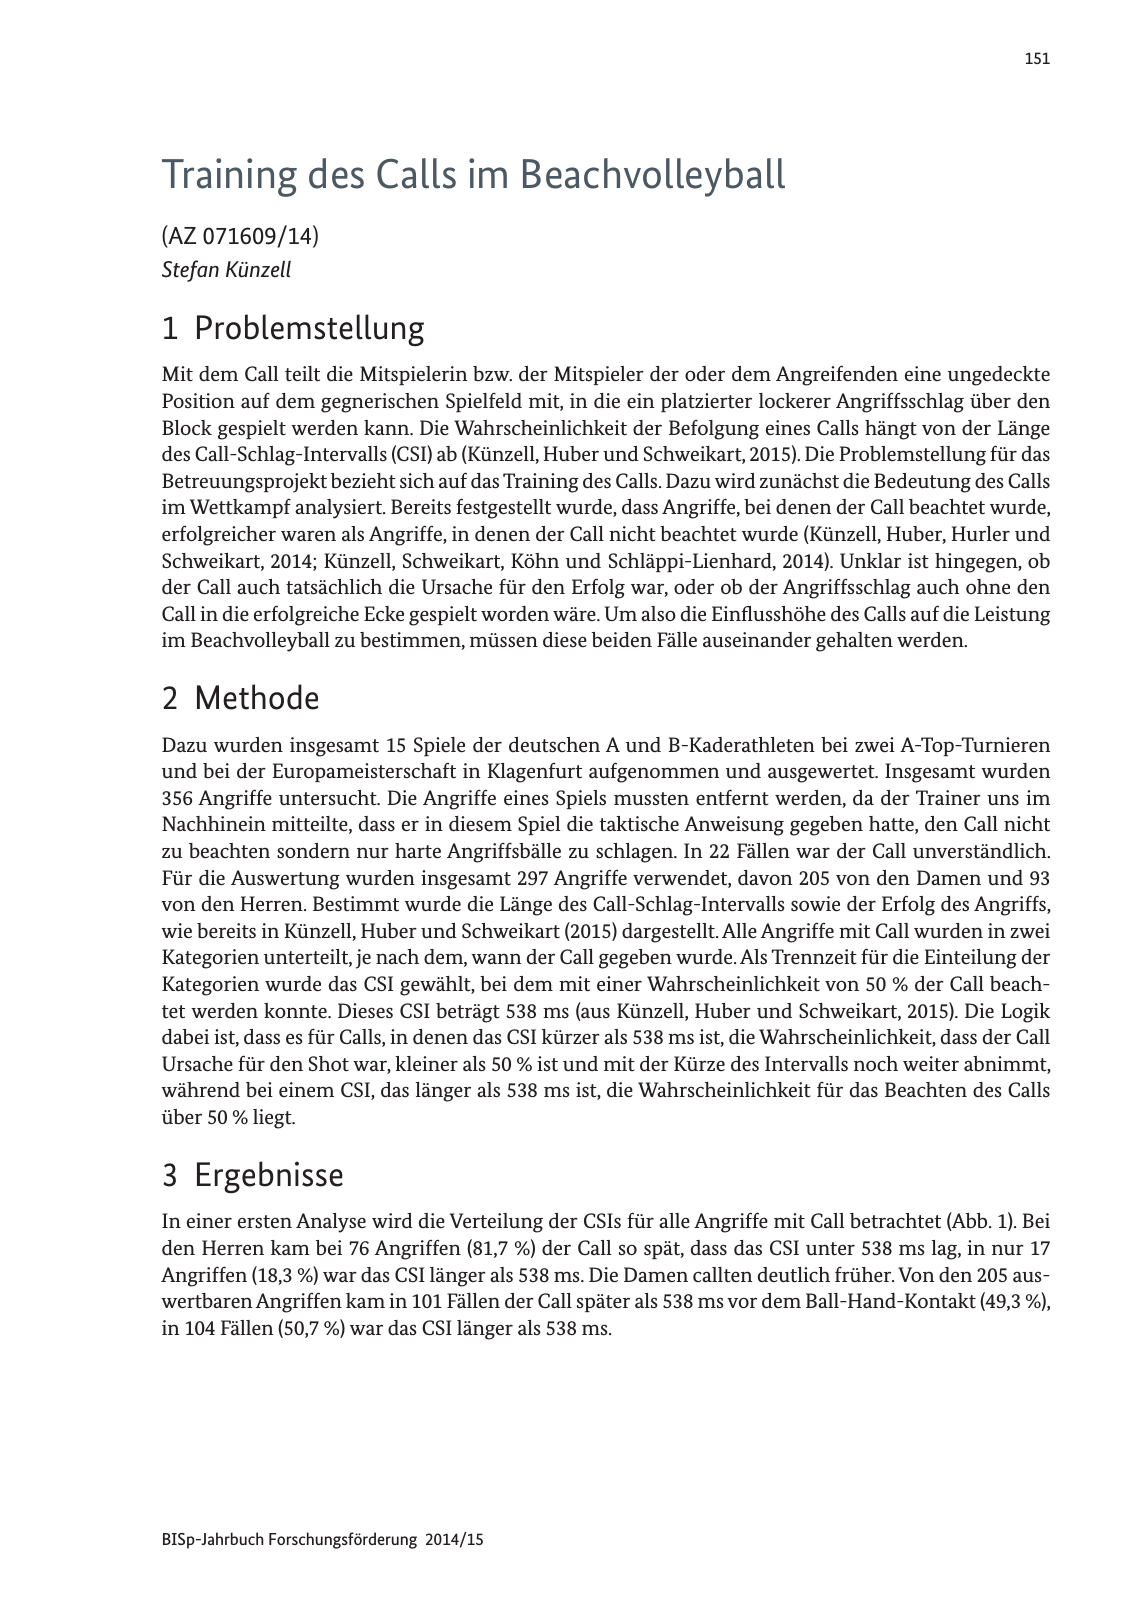 Vorschau Jahrbuch 2014/15 Seite 152